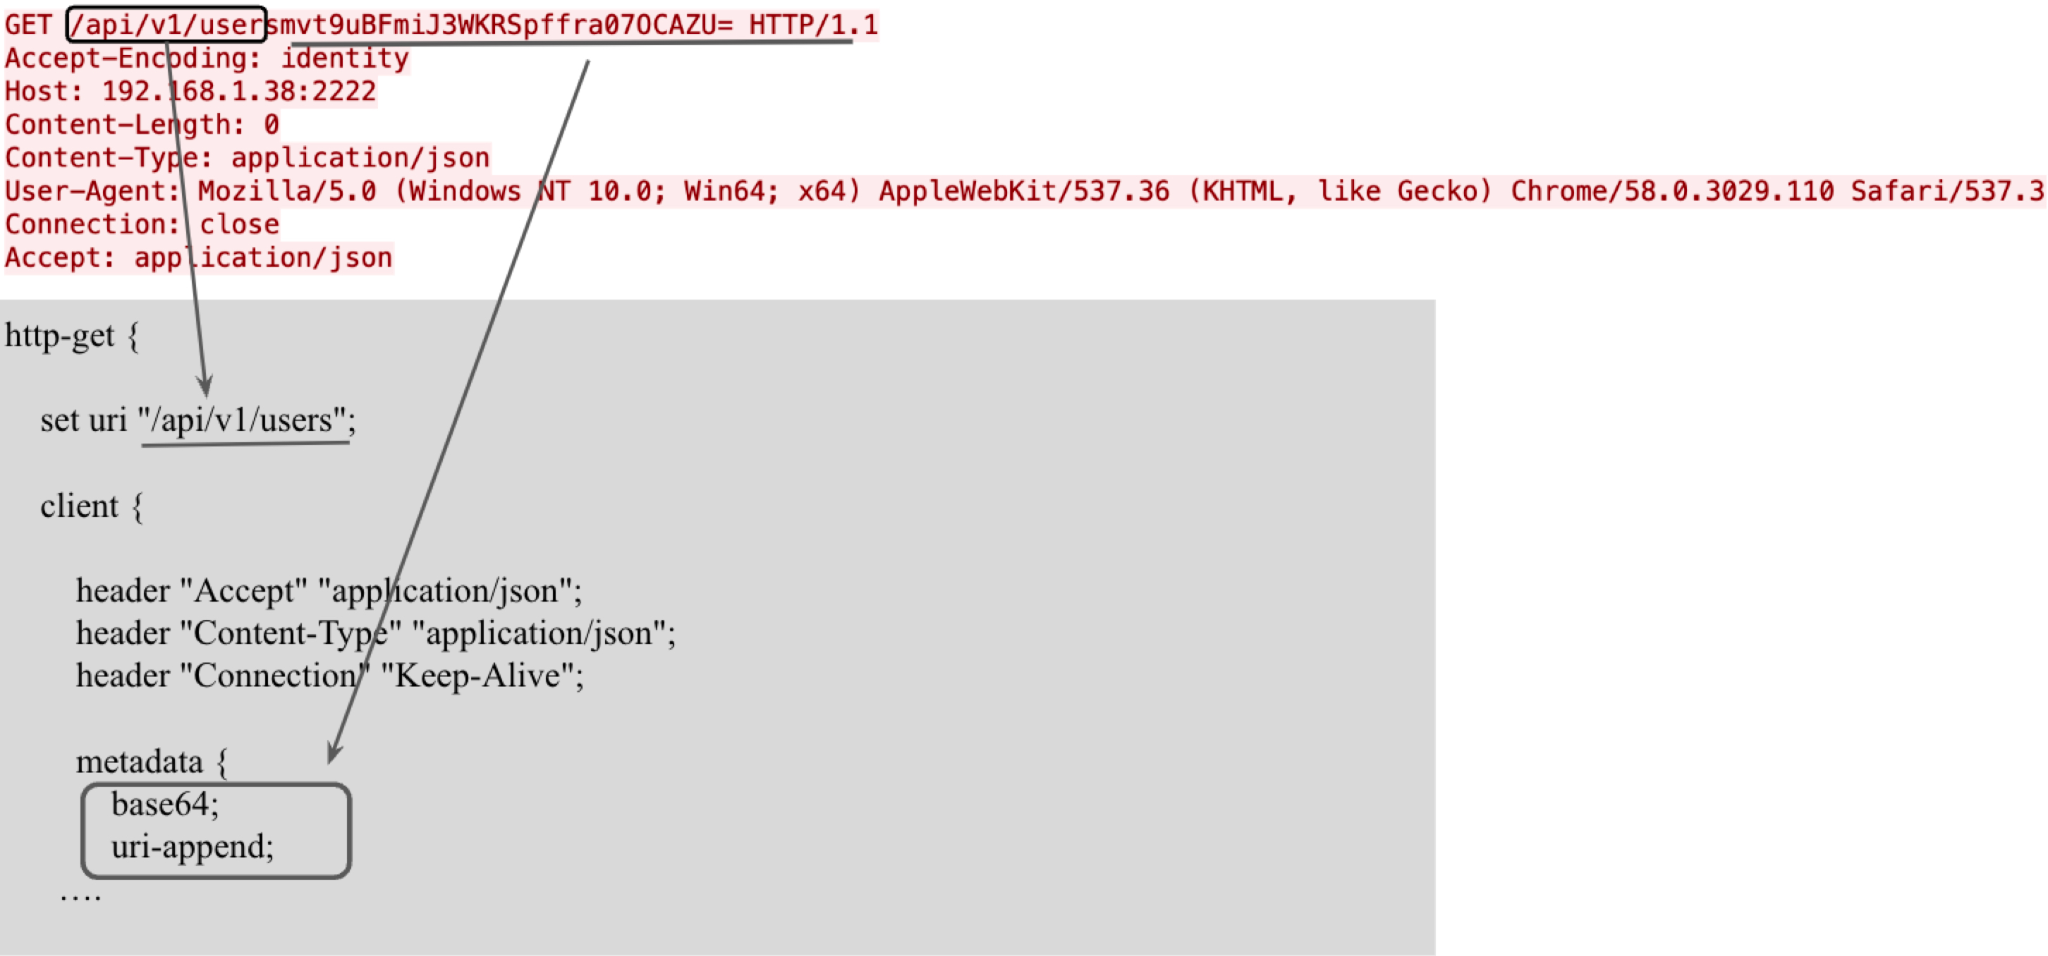 画像 4 は、HTTP ヘッダーと mal.profile に対応する部分の図です。四角形と矢印がコードの /api/v1/user セクションを強調表示しています。ユーザー名は、コード内の base64 行と uri-append 行への矢印で強調表示されています。 